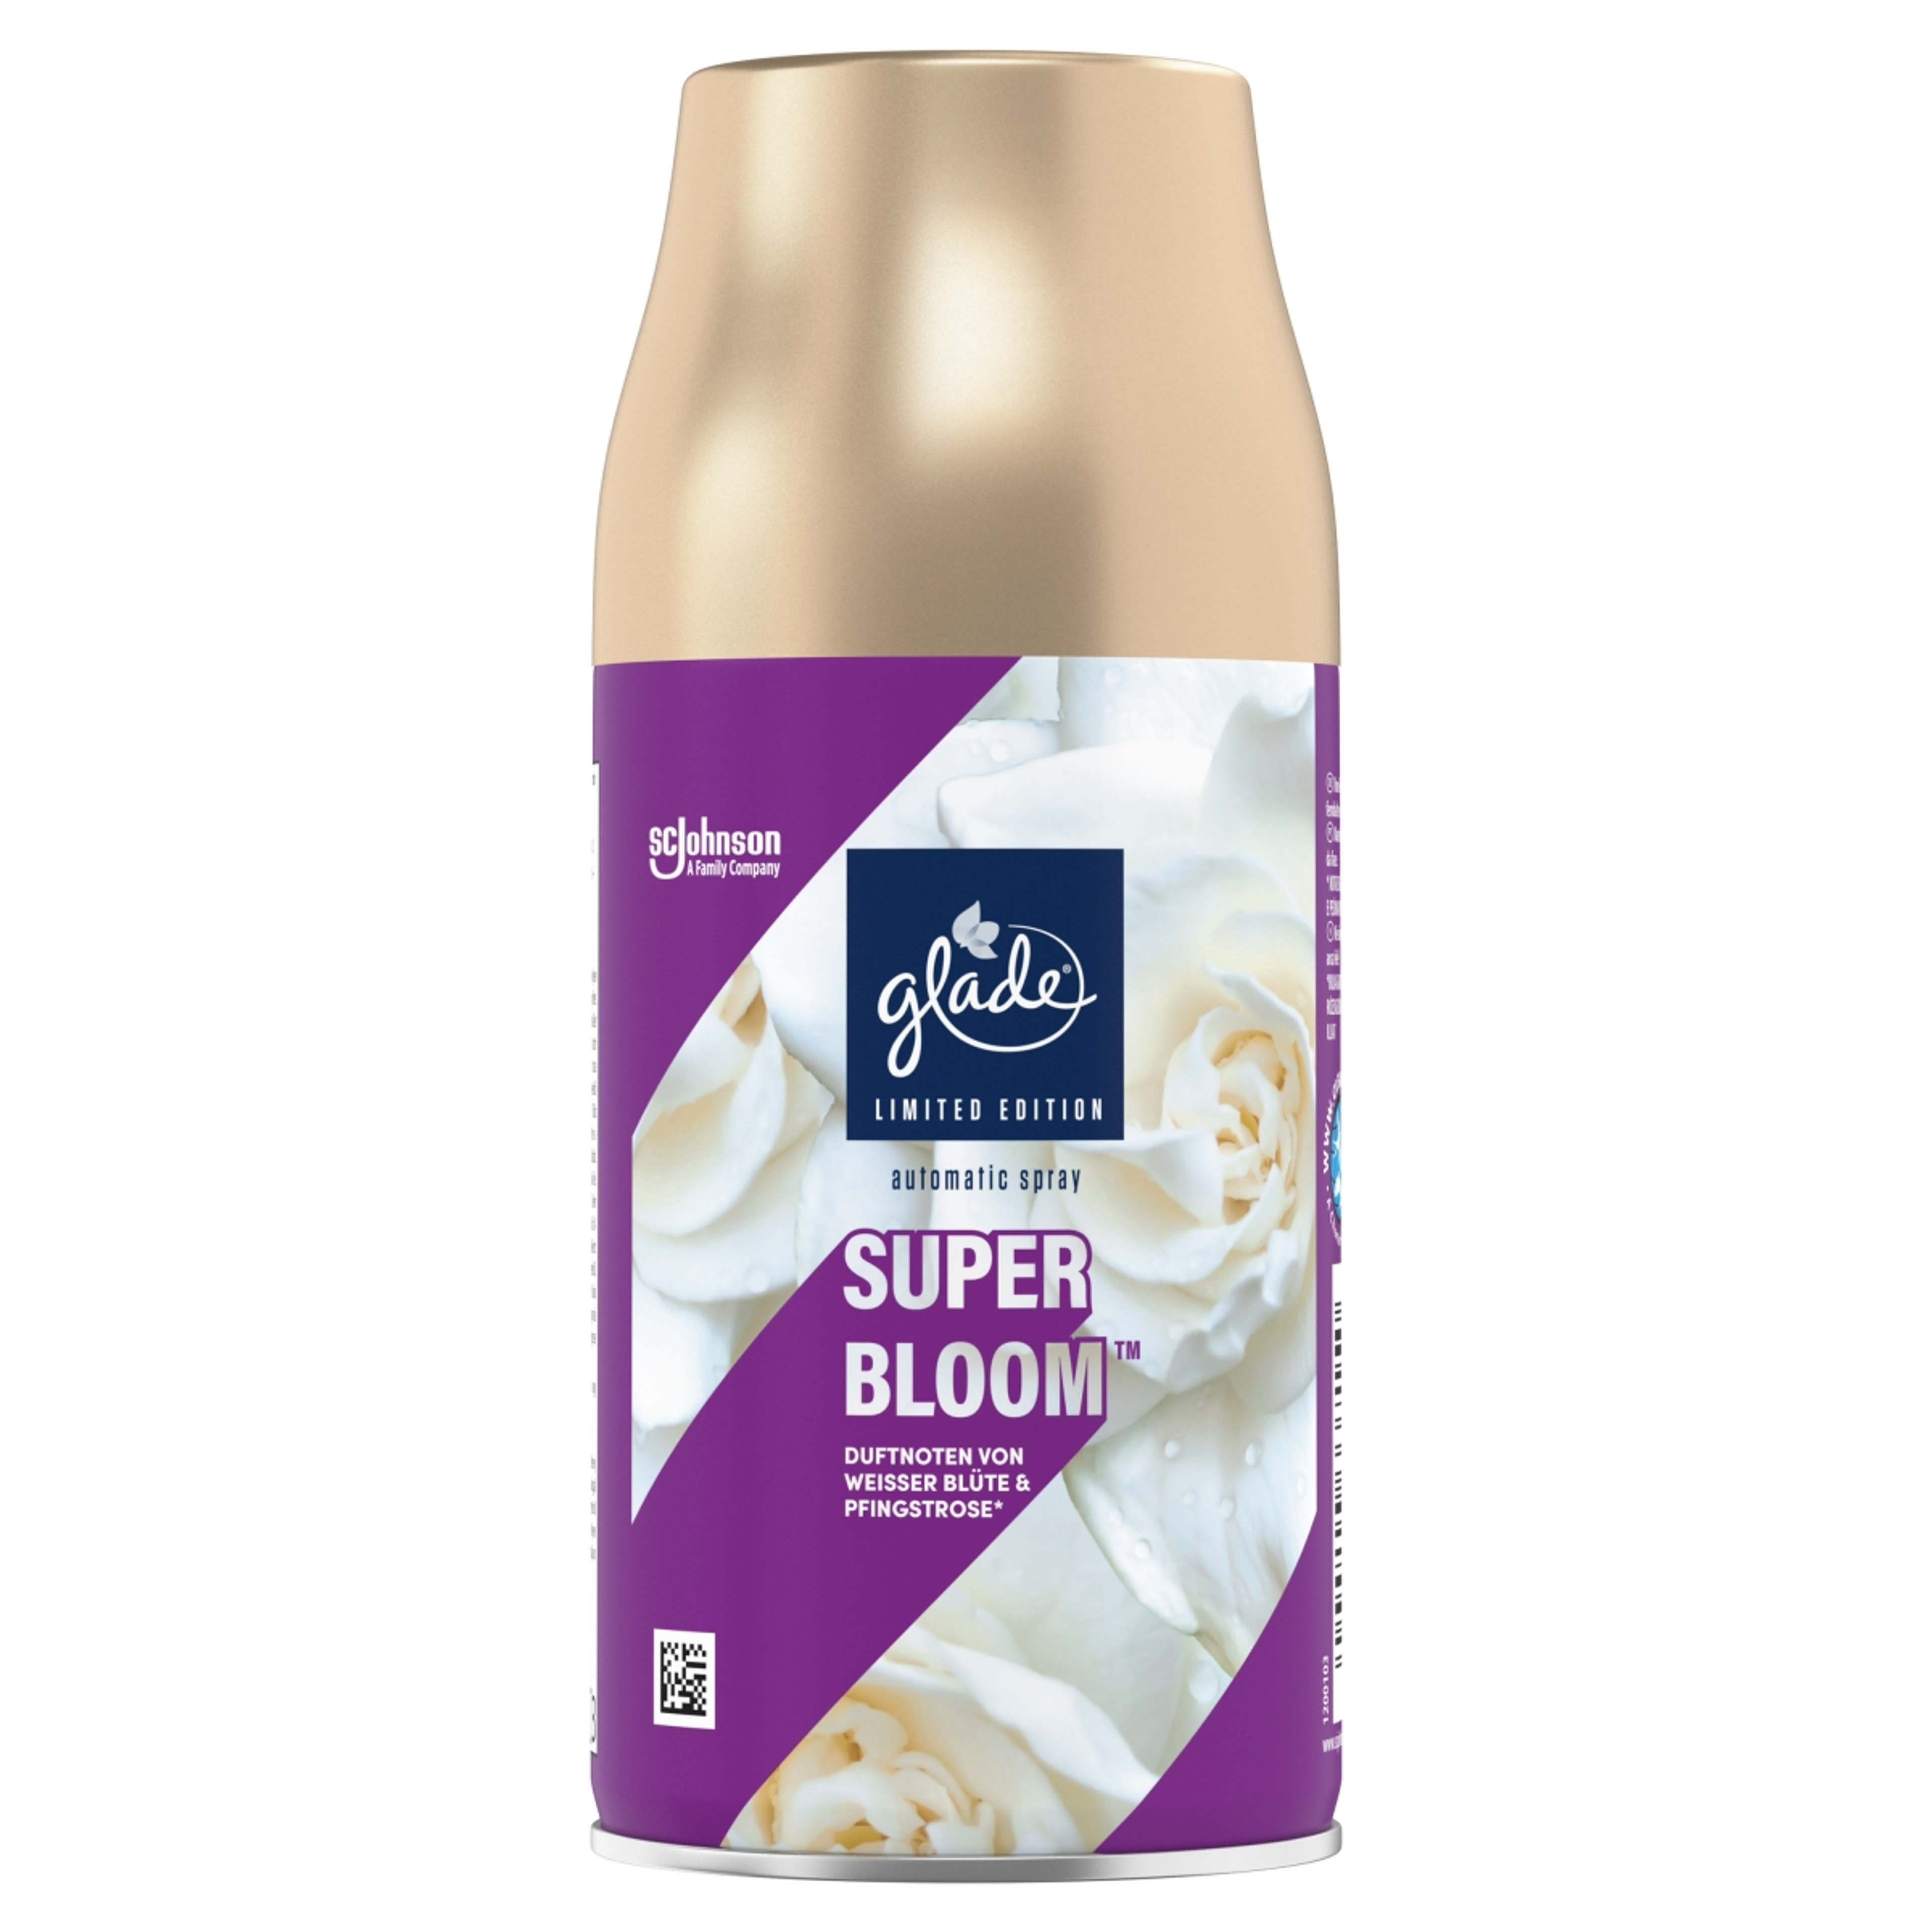 Glade Super Bloom automata légfrissítő utántöltő - 269 ml